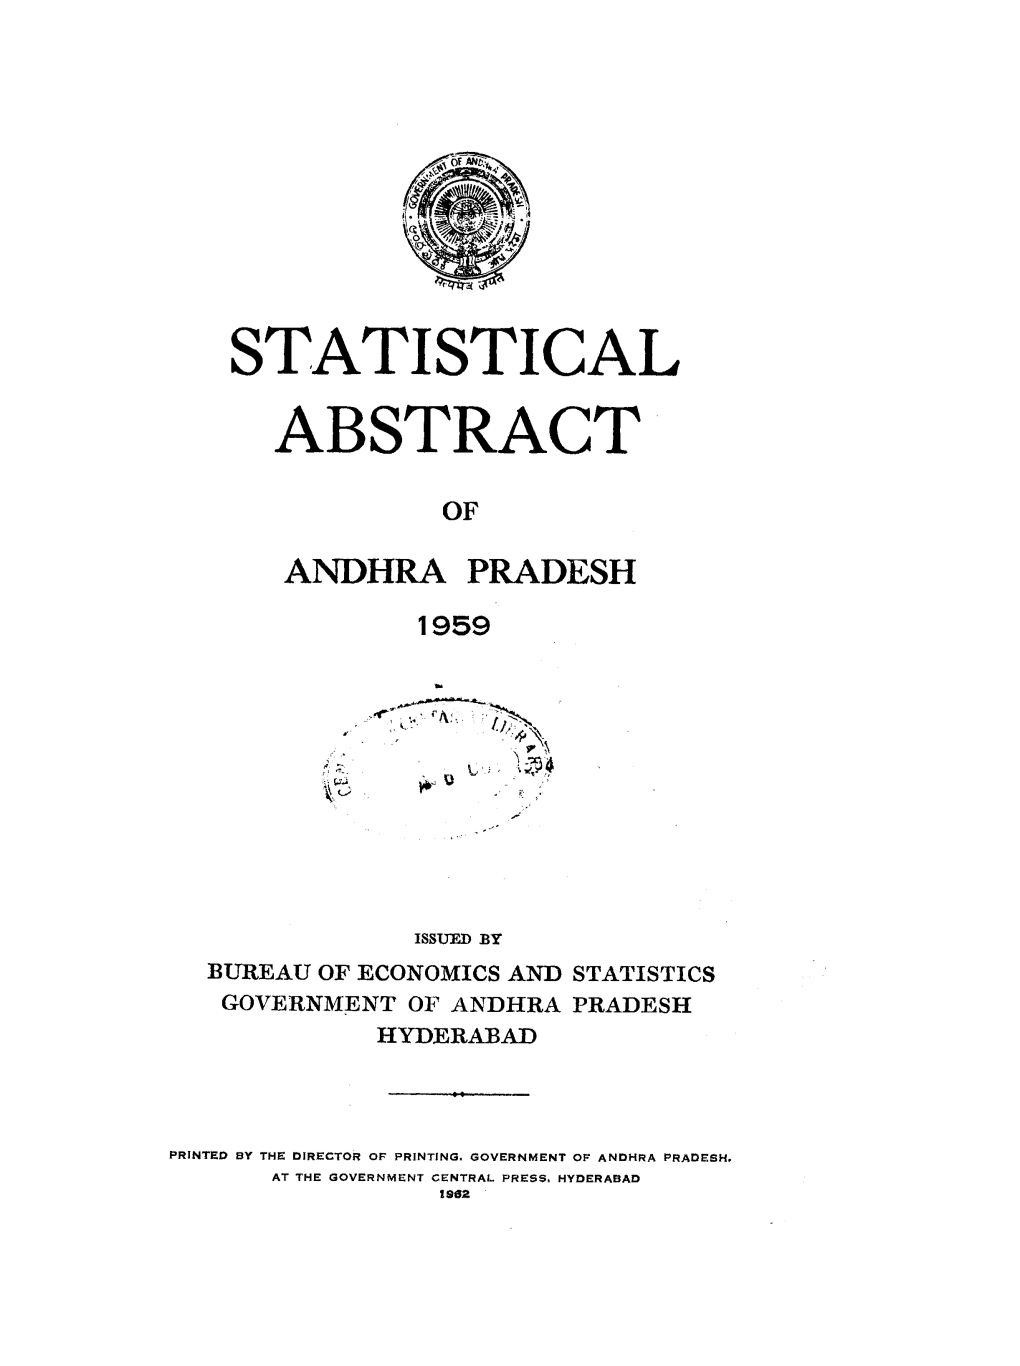 Statistical Abstract of Andhra Pradesh 1959